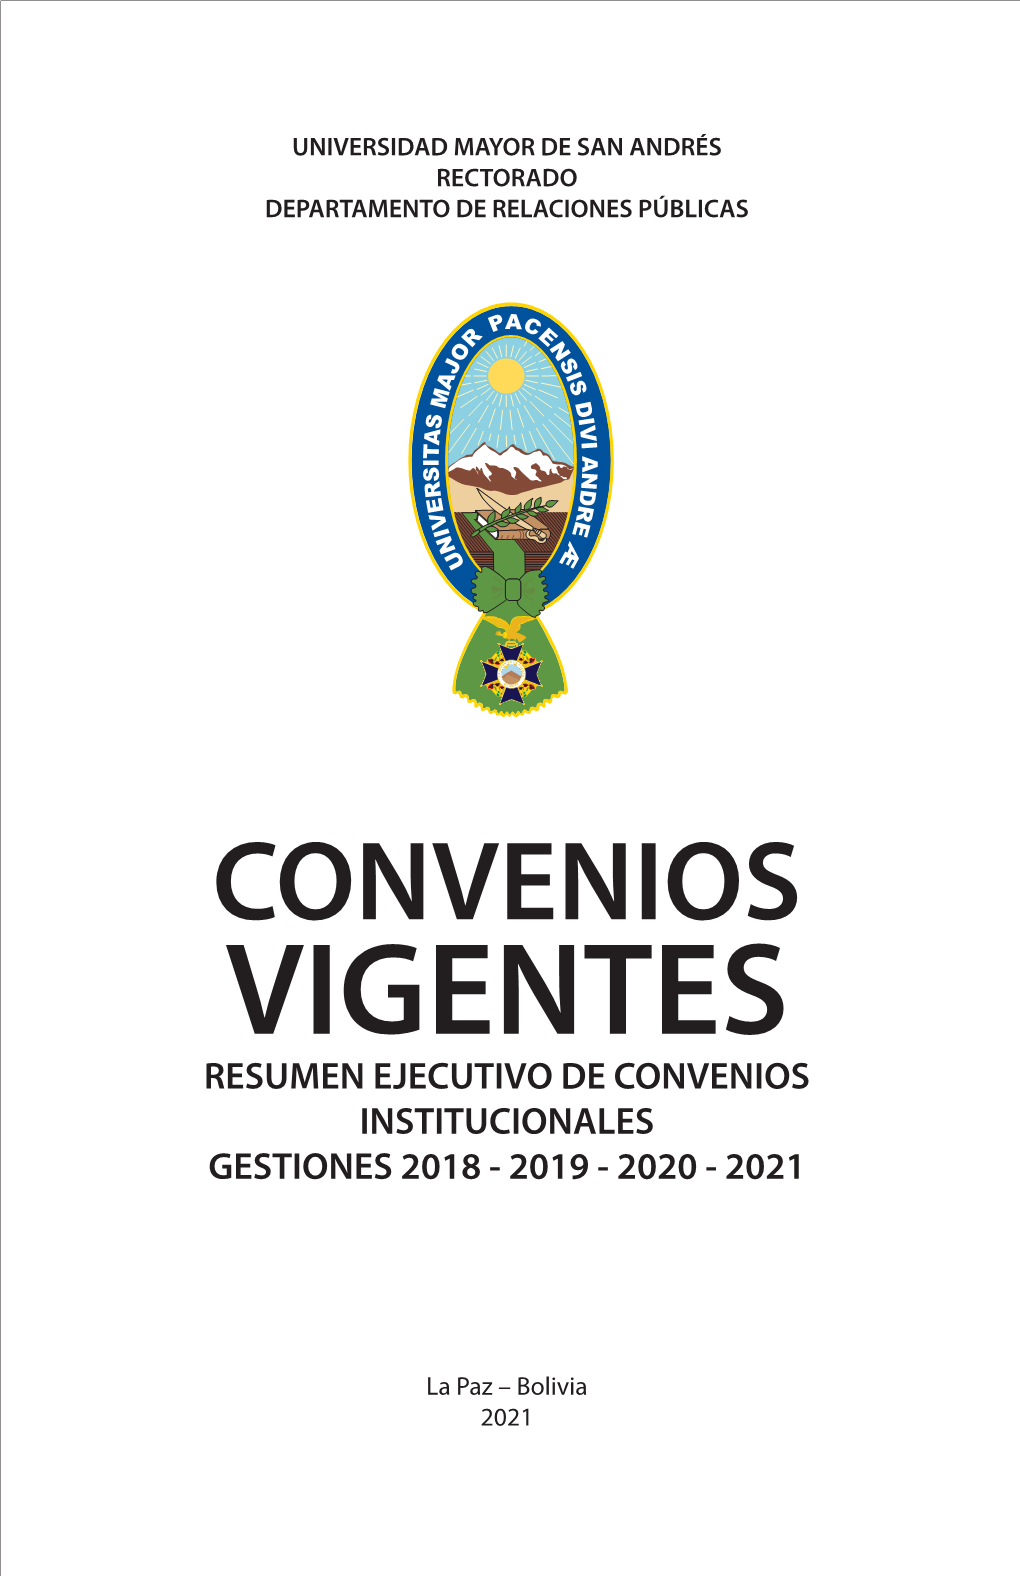 Convenios Vigentes Resumen Ejecutivo De Convenios Institucionales Gestiones 2018 - 2019 - 2020 - 2021